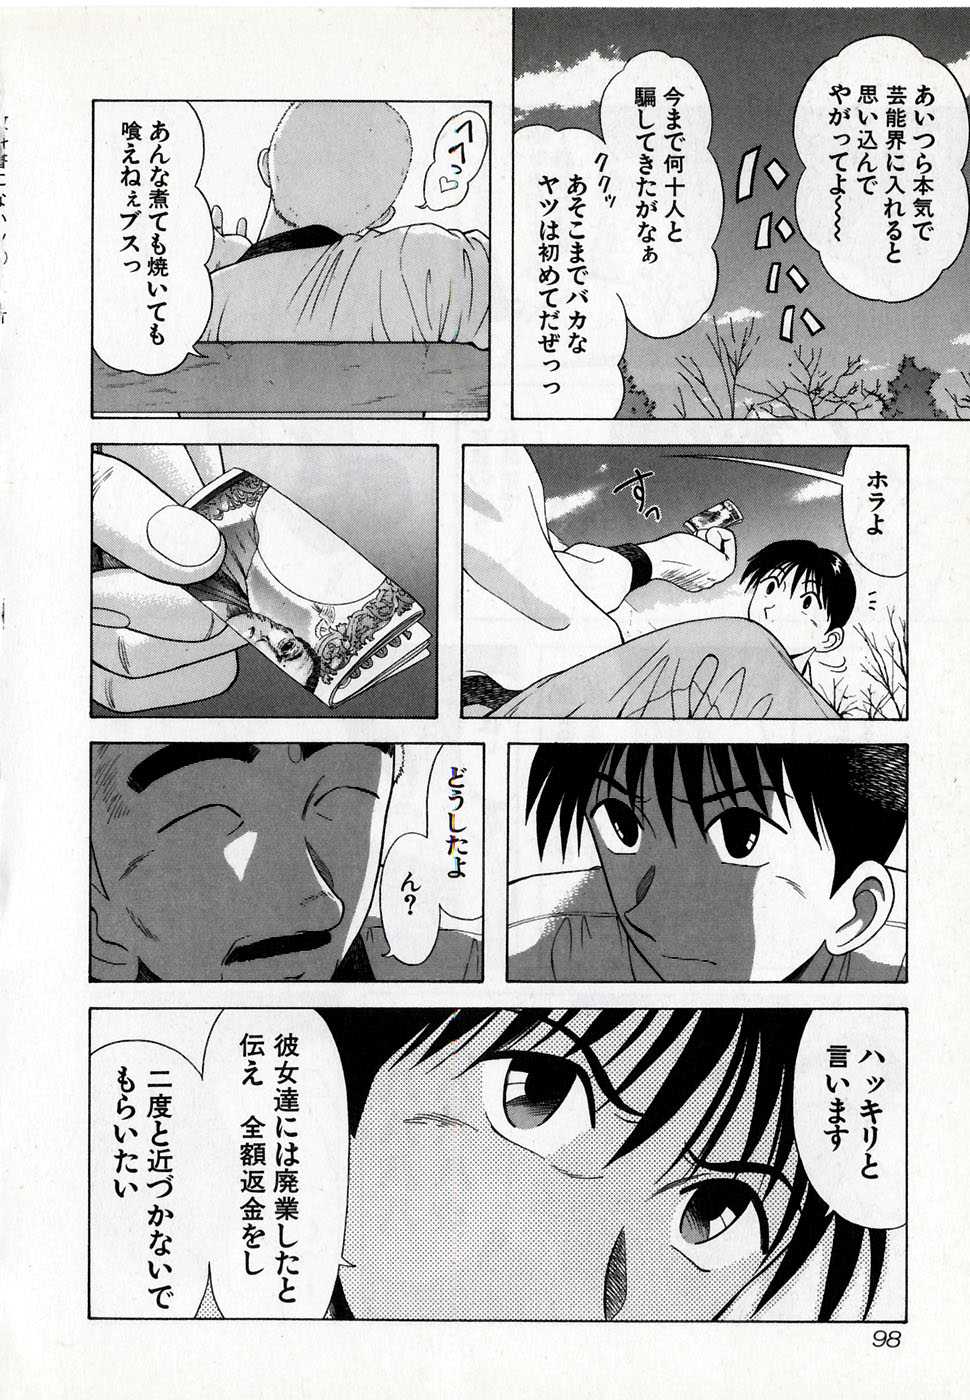 Kyoukasho ni nai vol. 8 教科書にないッ！